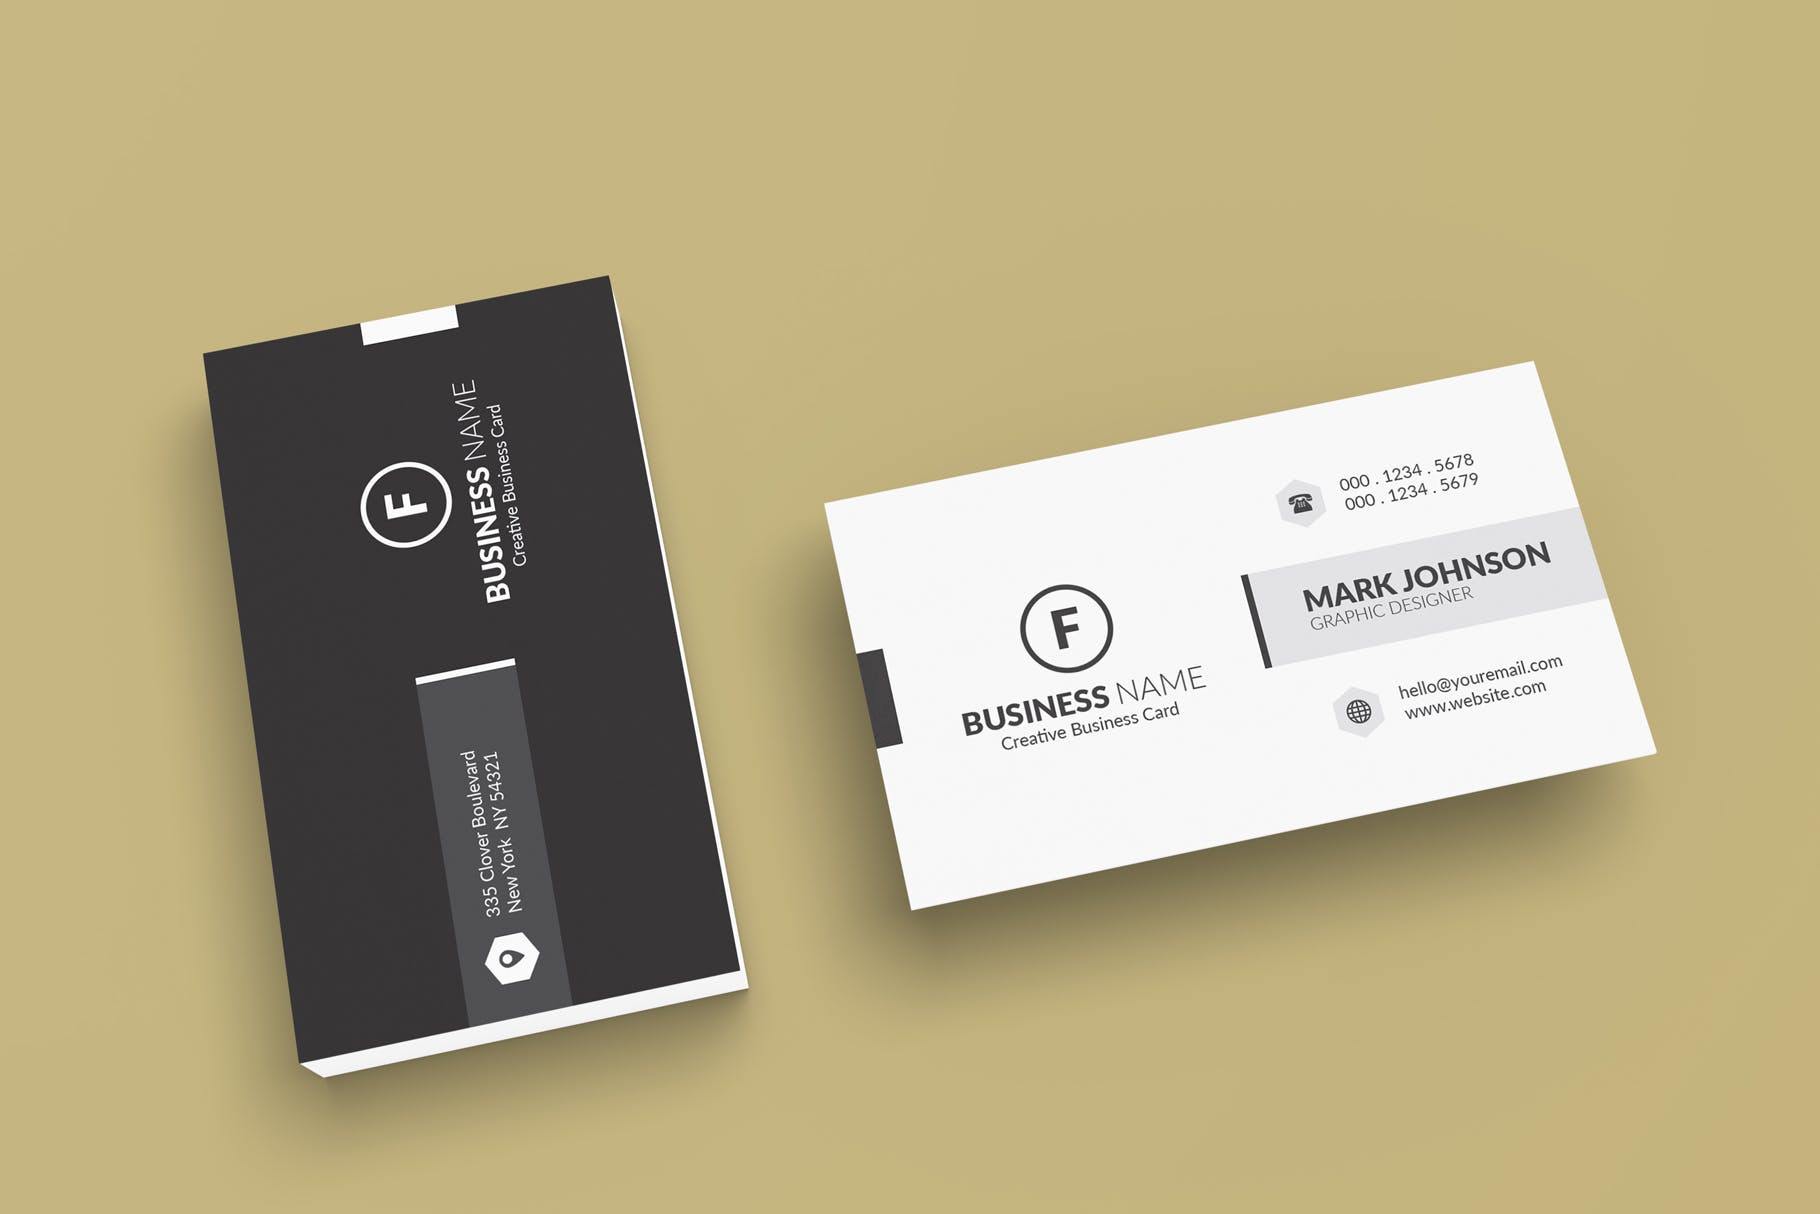 极简设计风格名片设计效果图蚂蚁素材精选 Minimalist Business Cards Mockup插图(3)